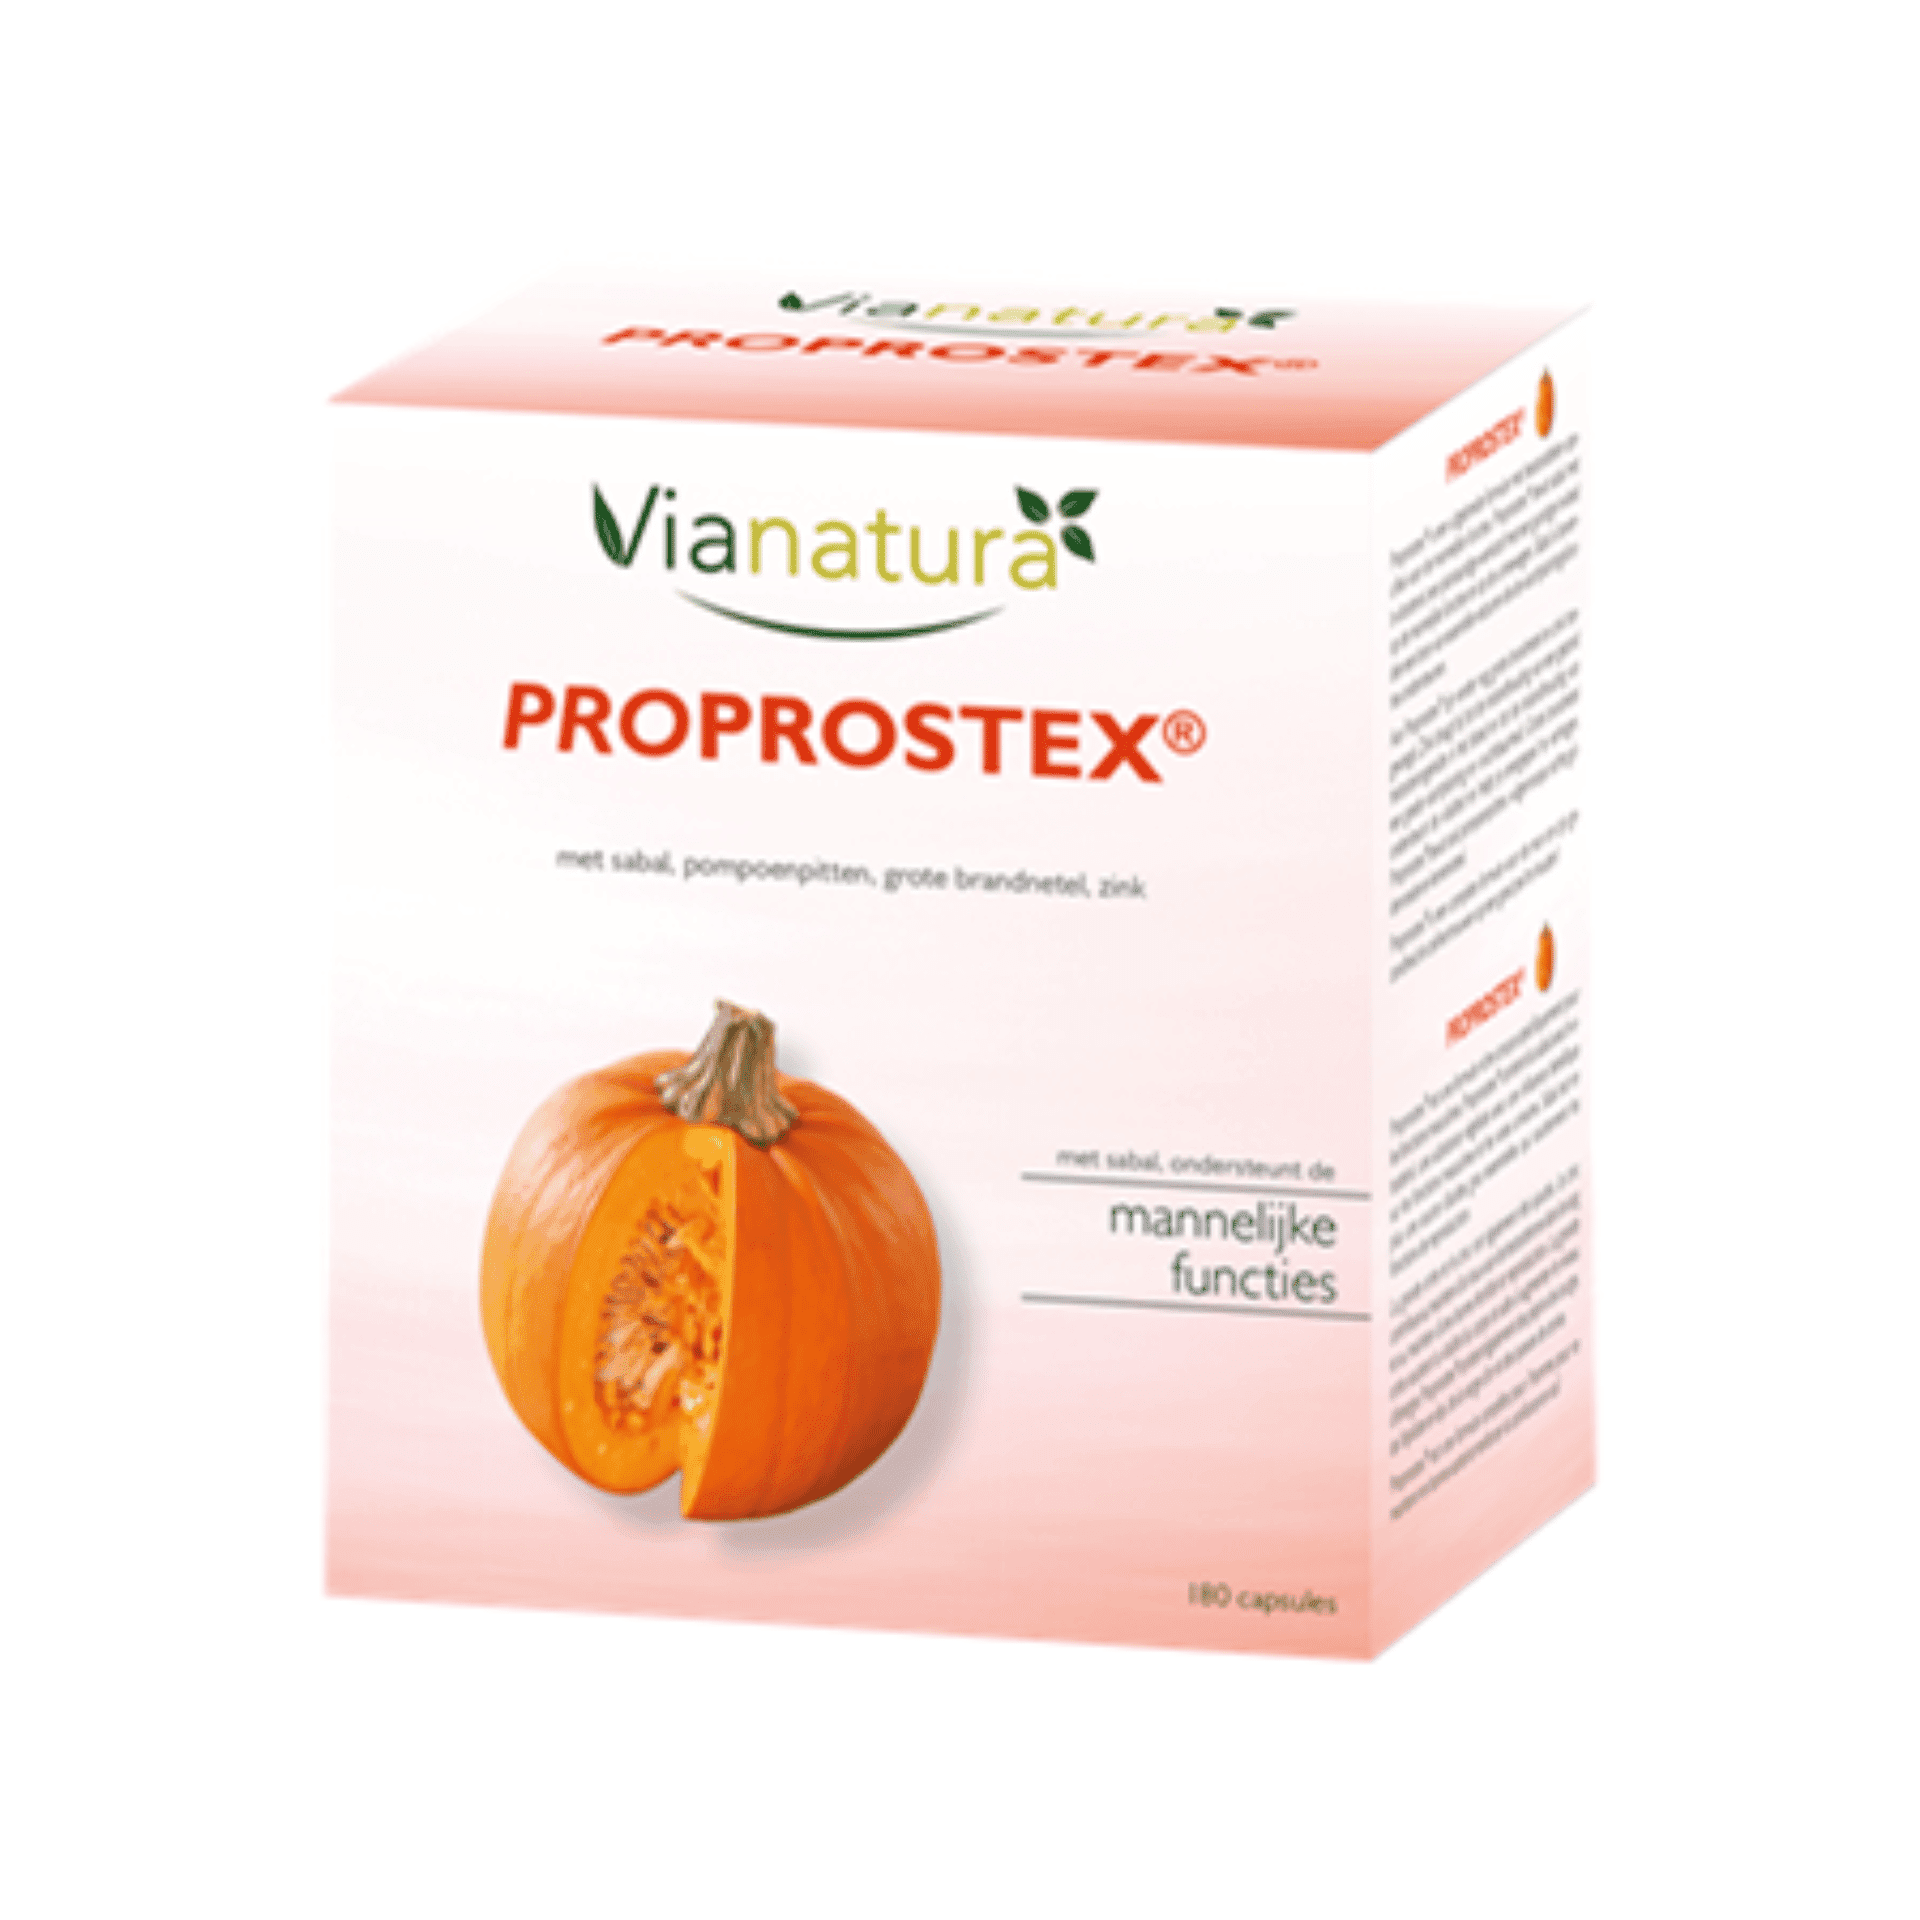 Vianatura Proprostex 180 capsules